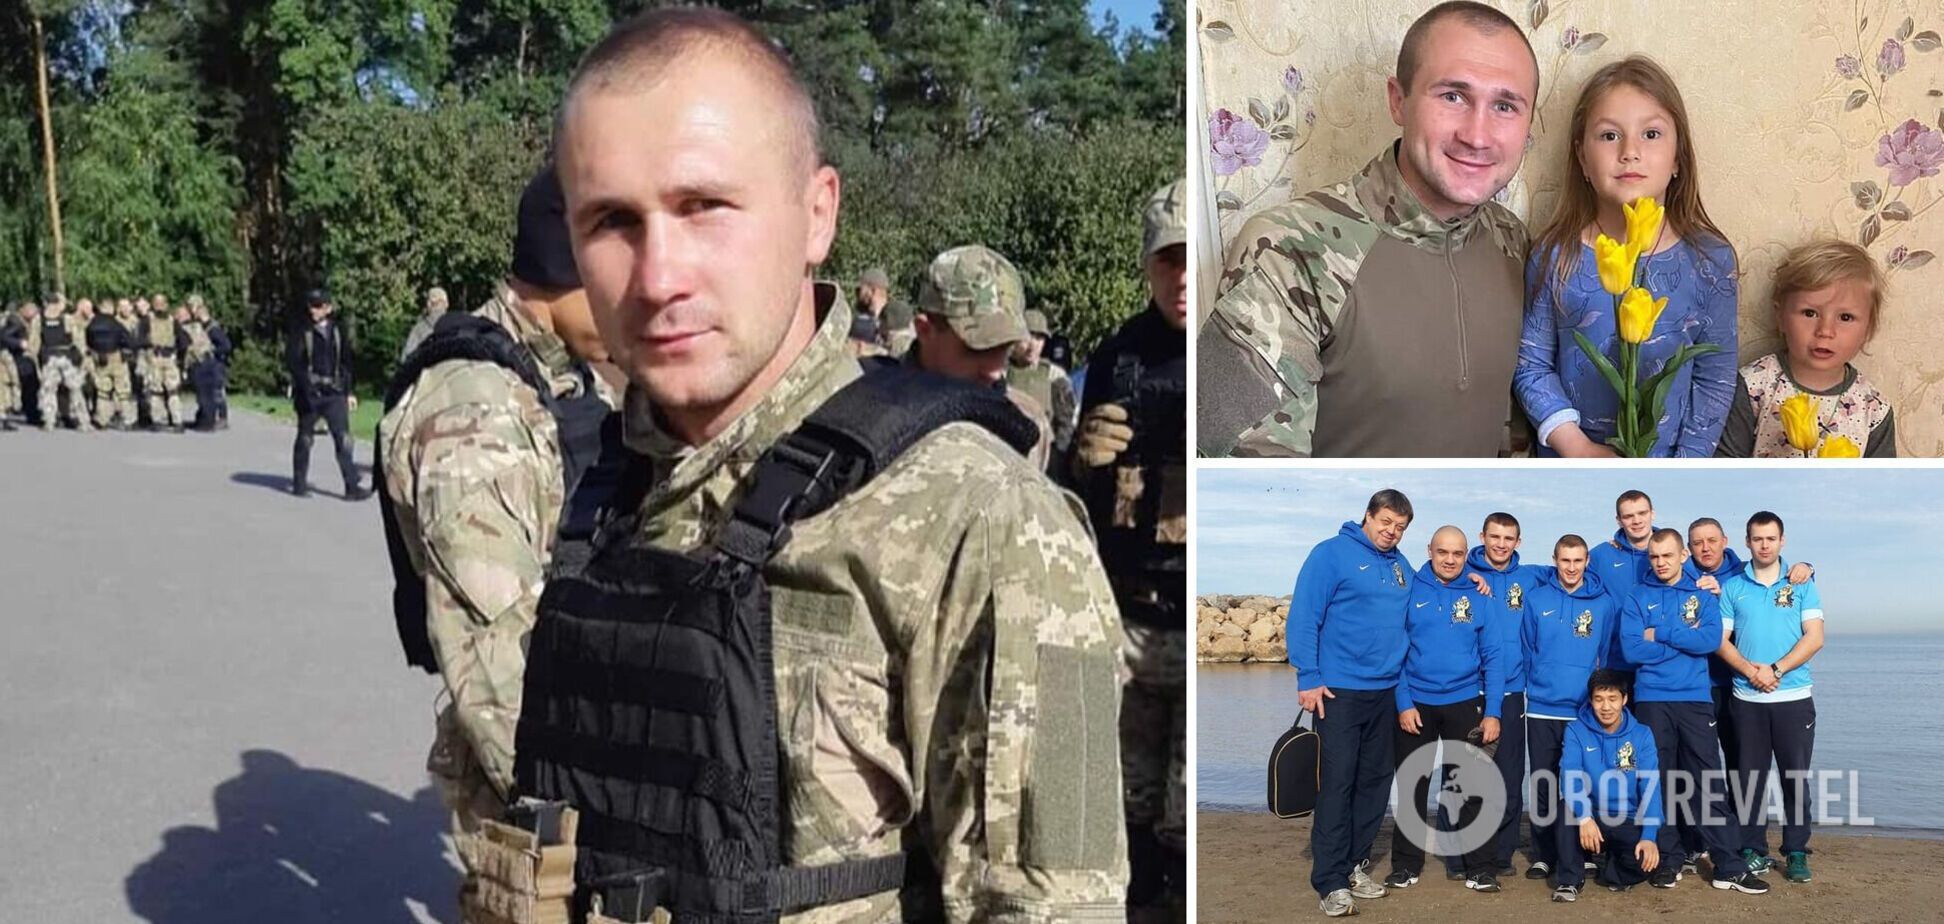 'В комнату прилетел снаряд': боксер 'Украинских атаманов' погиб, выполняя задание спецподразделения 'КОРД'